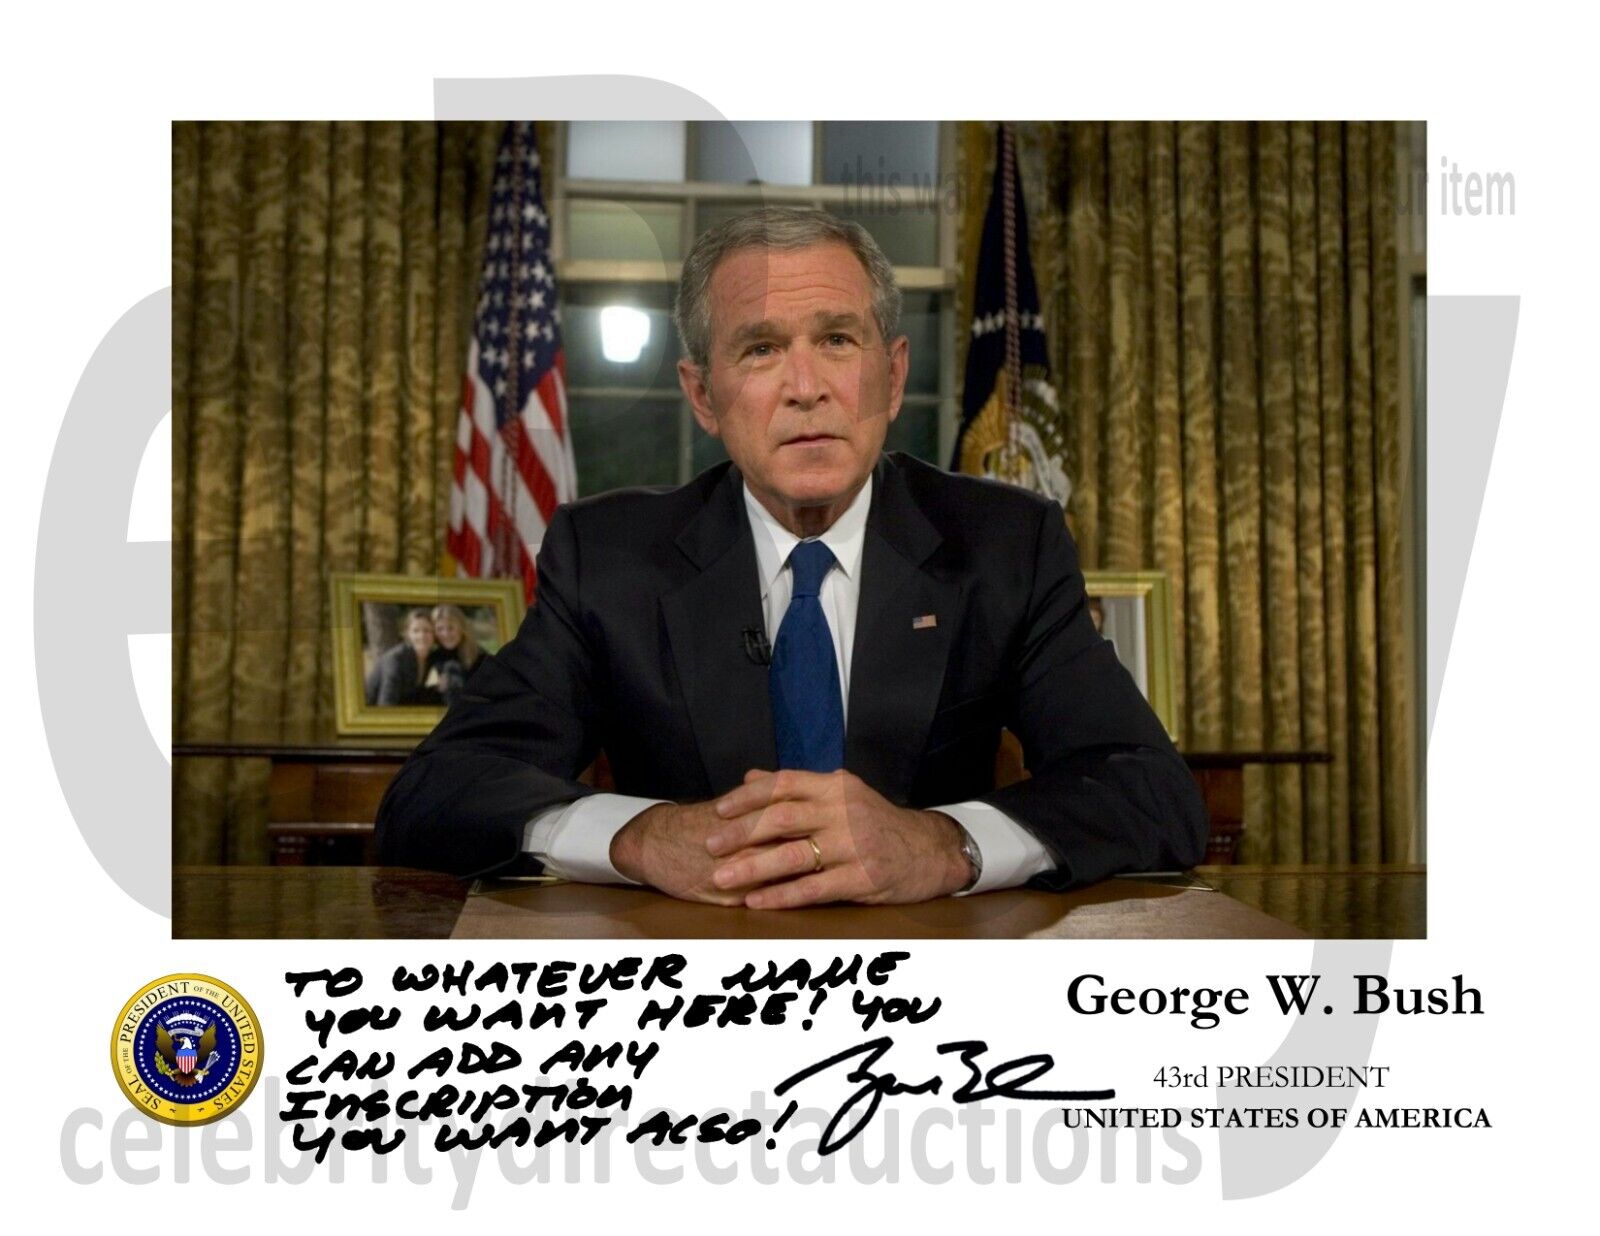 PERSONALIZED President George W. Bush autographed 11x8.5 portrait photo REPRINT